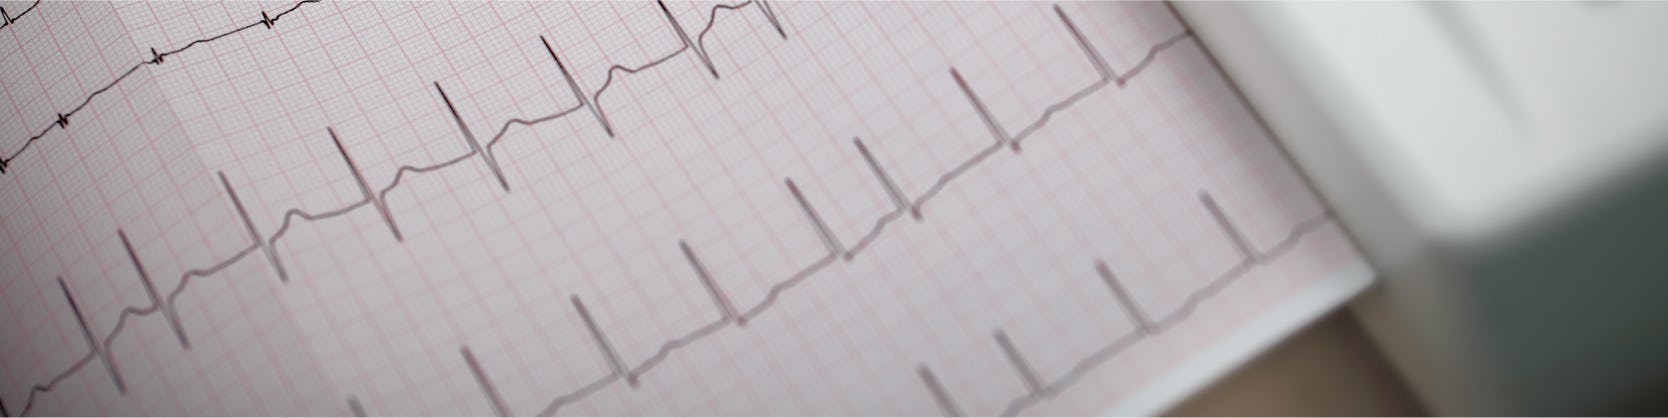 Electrocardiograma - ECG / EKG 